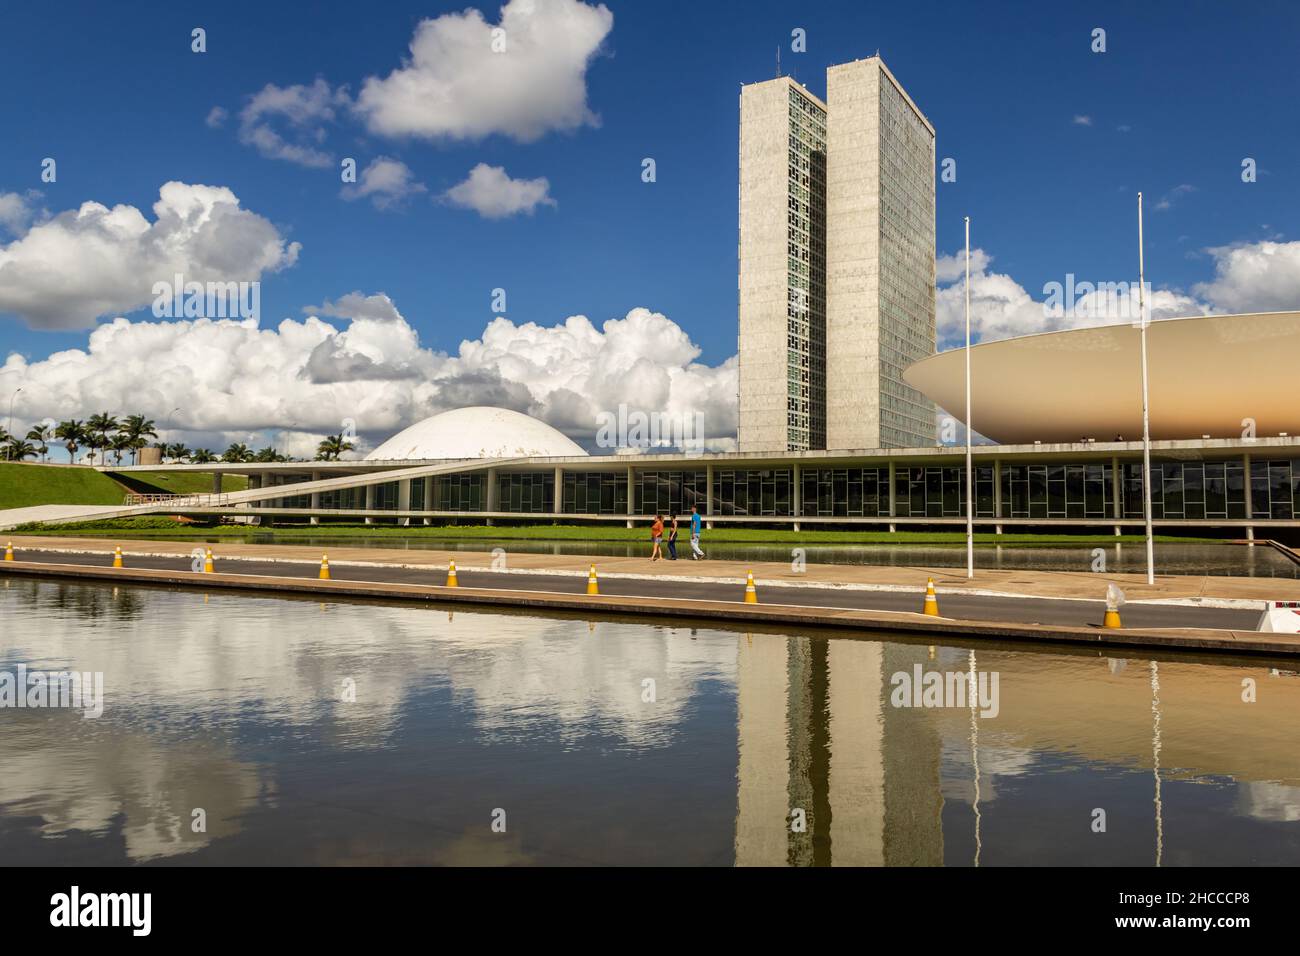 Brasilia, District fédéral, Brésil – 25 décembre 2021 : Palais national des congrès par temps clair et ciel nuageux. Banque D'Images